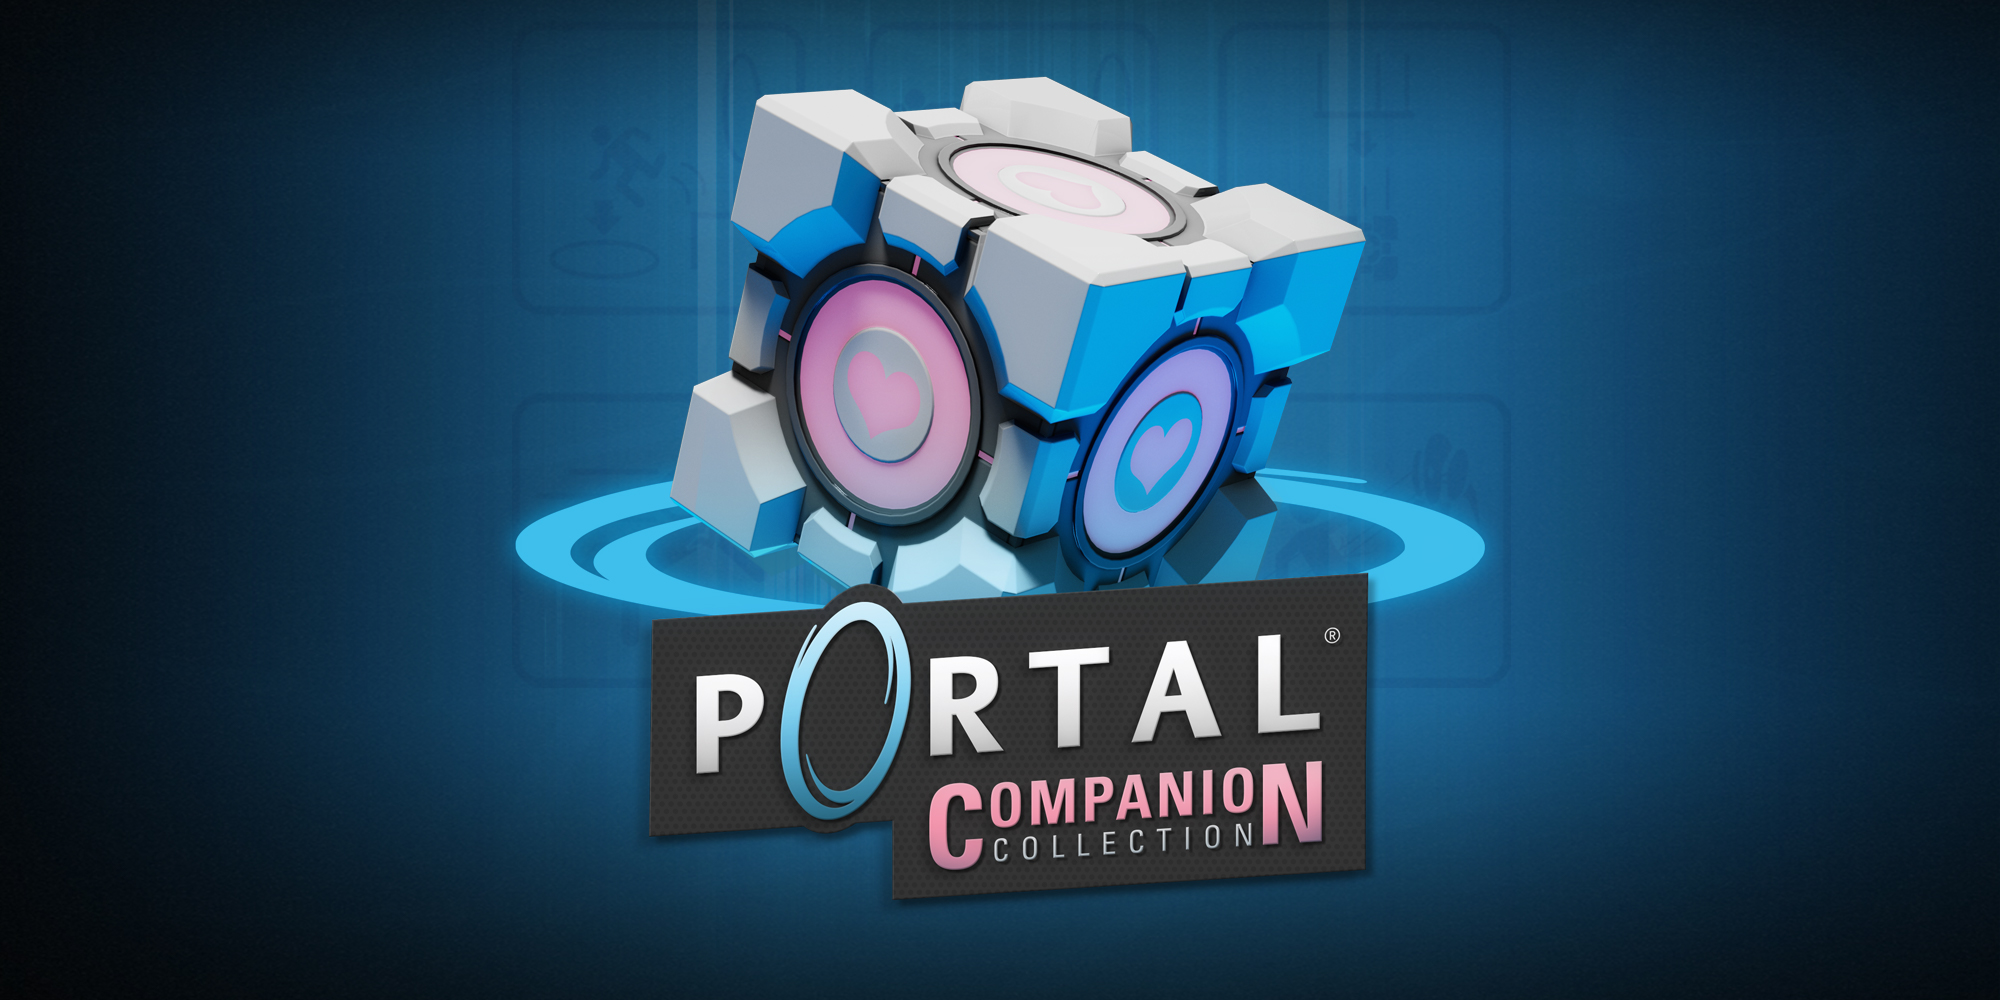 La collection Portal Companion est disponible dès aujourd’hui sur Nintendo Switch.